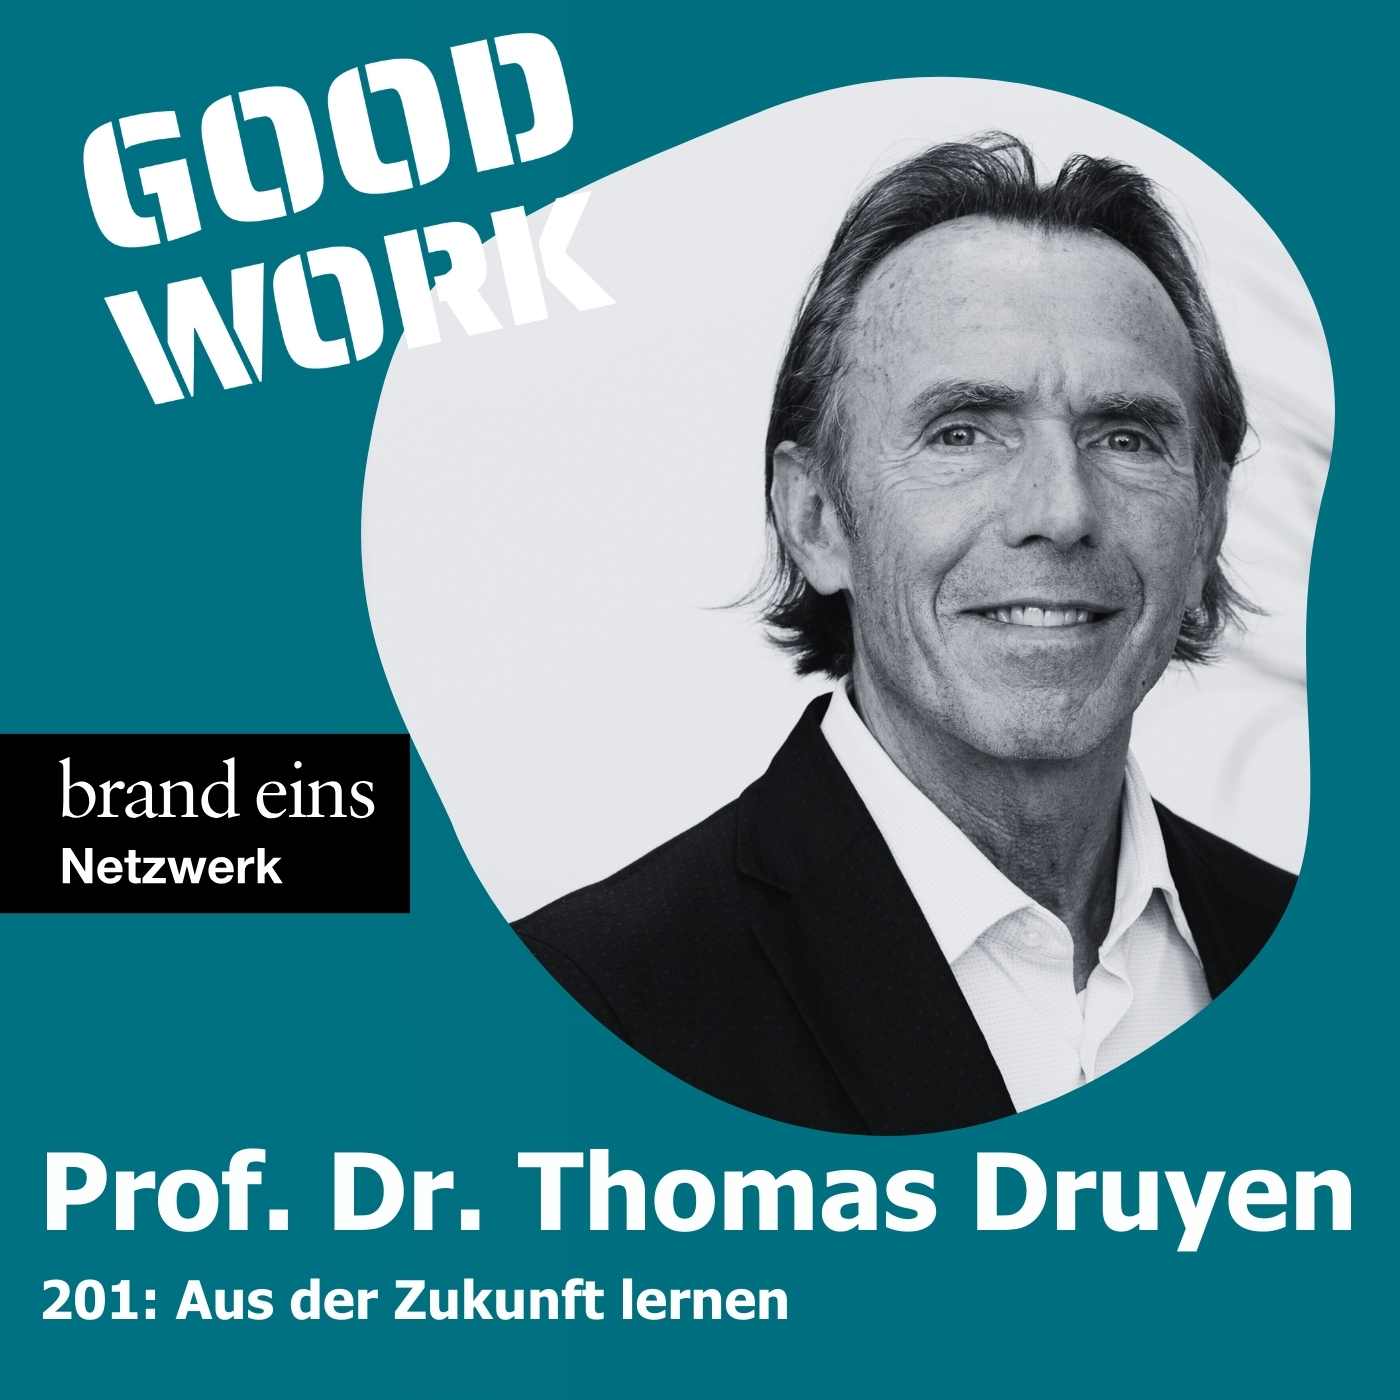 "Zukunftspsychologie heisst, aus der Zukunft zu lernen" mit Zukunftsforscher Prof. Dr. Thomas Druyen